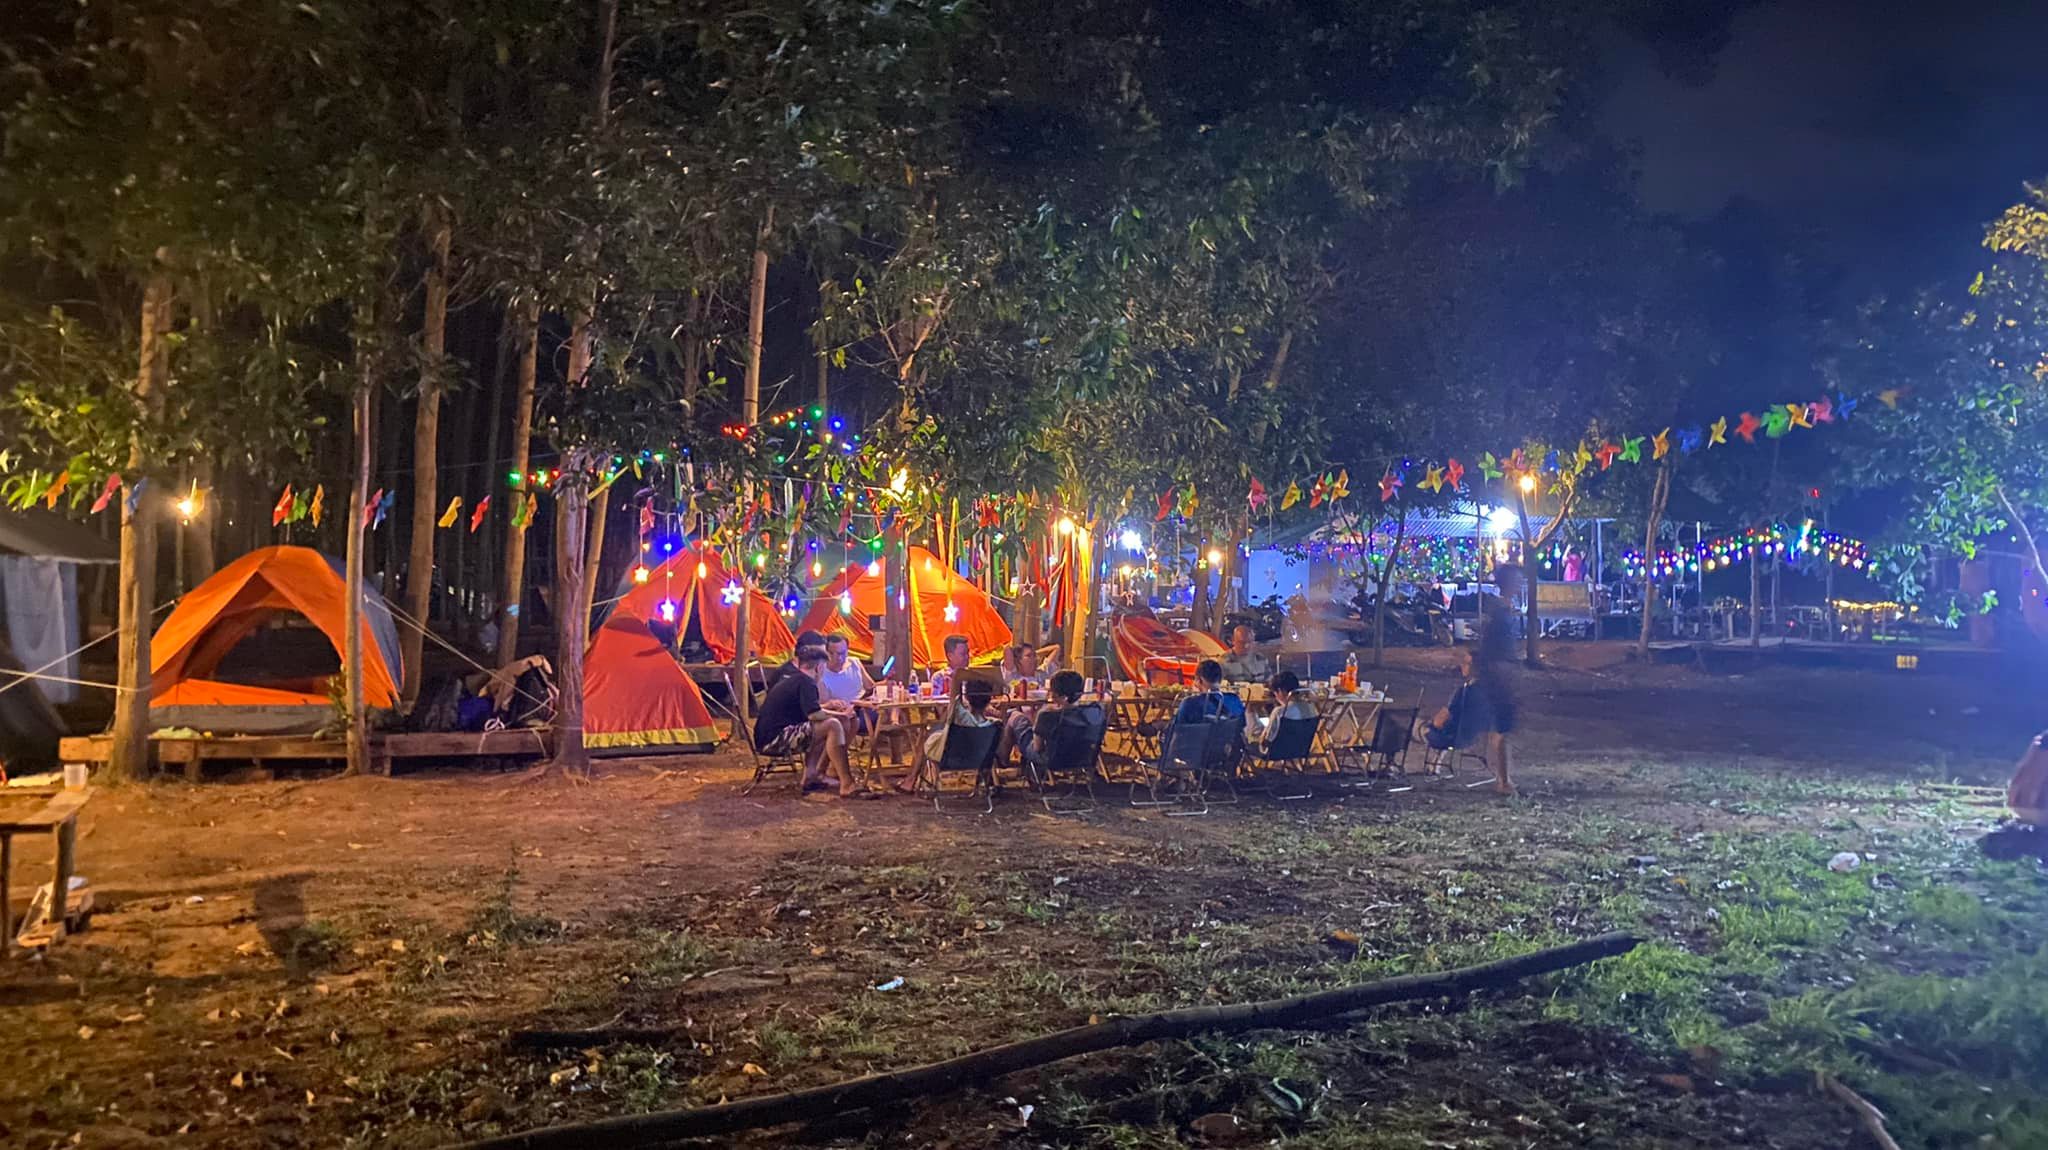 Bãi cắm trại Holiday Camping – Đồng Nai